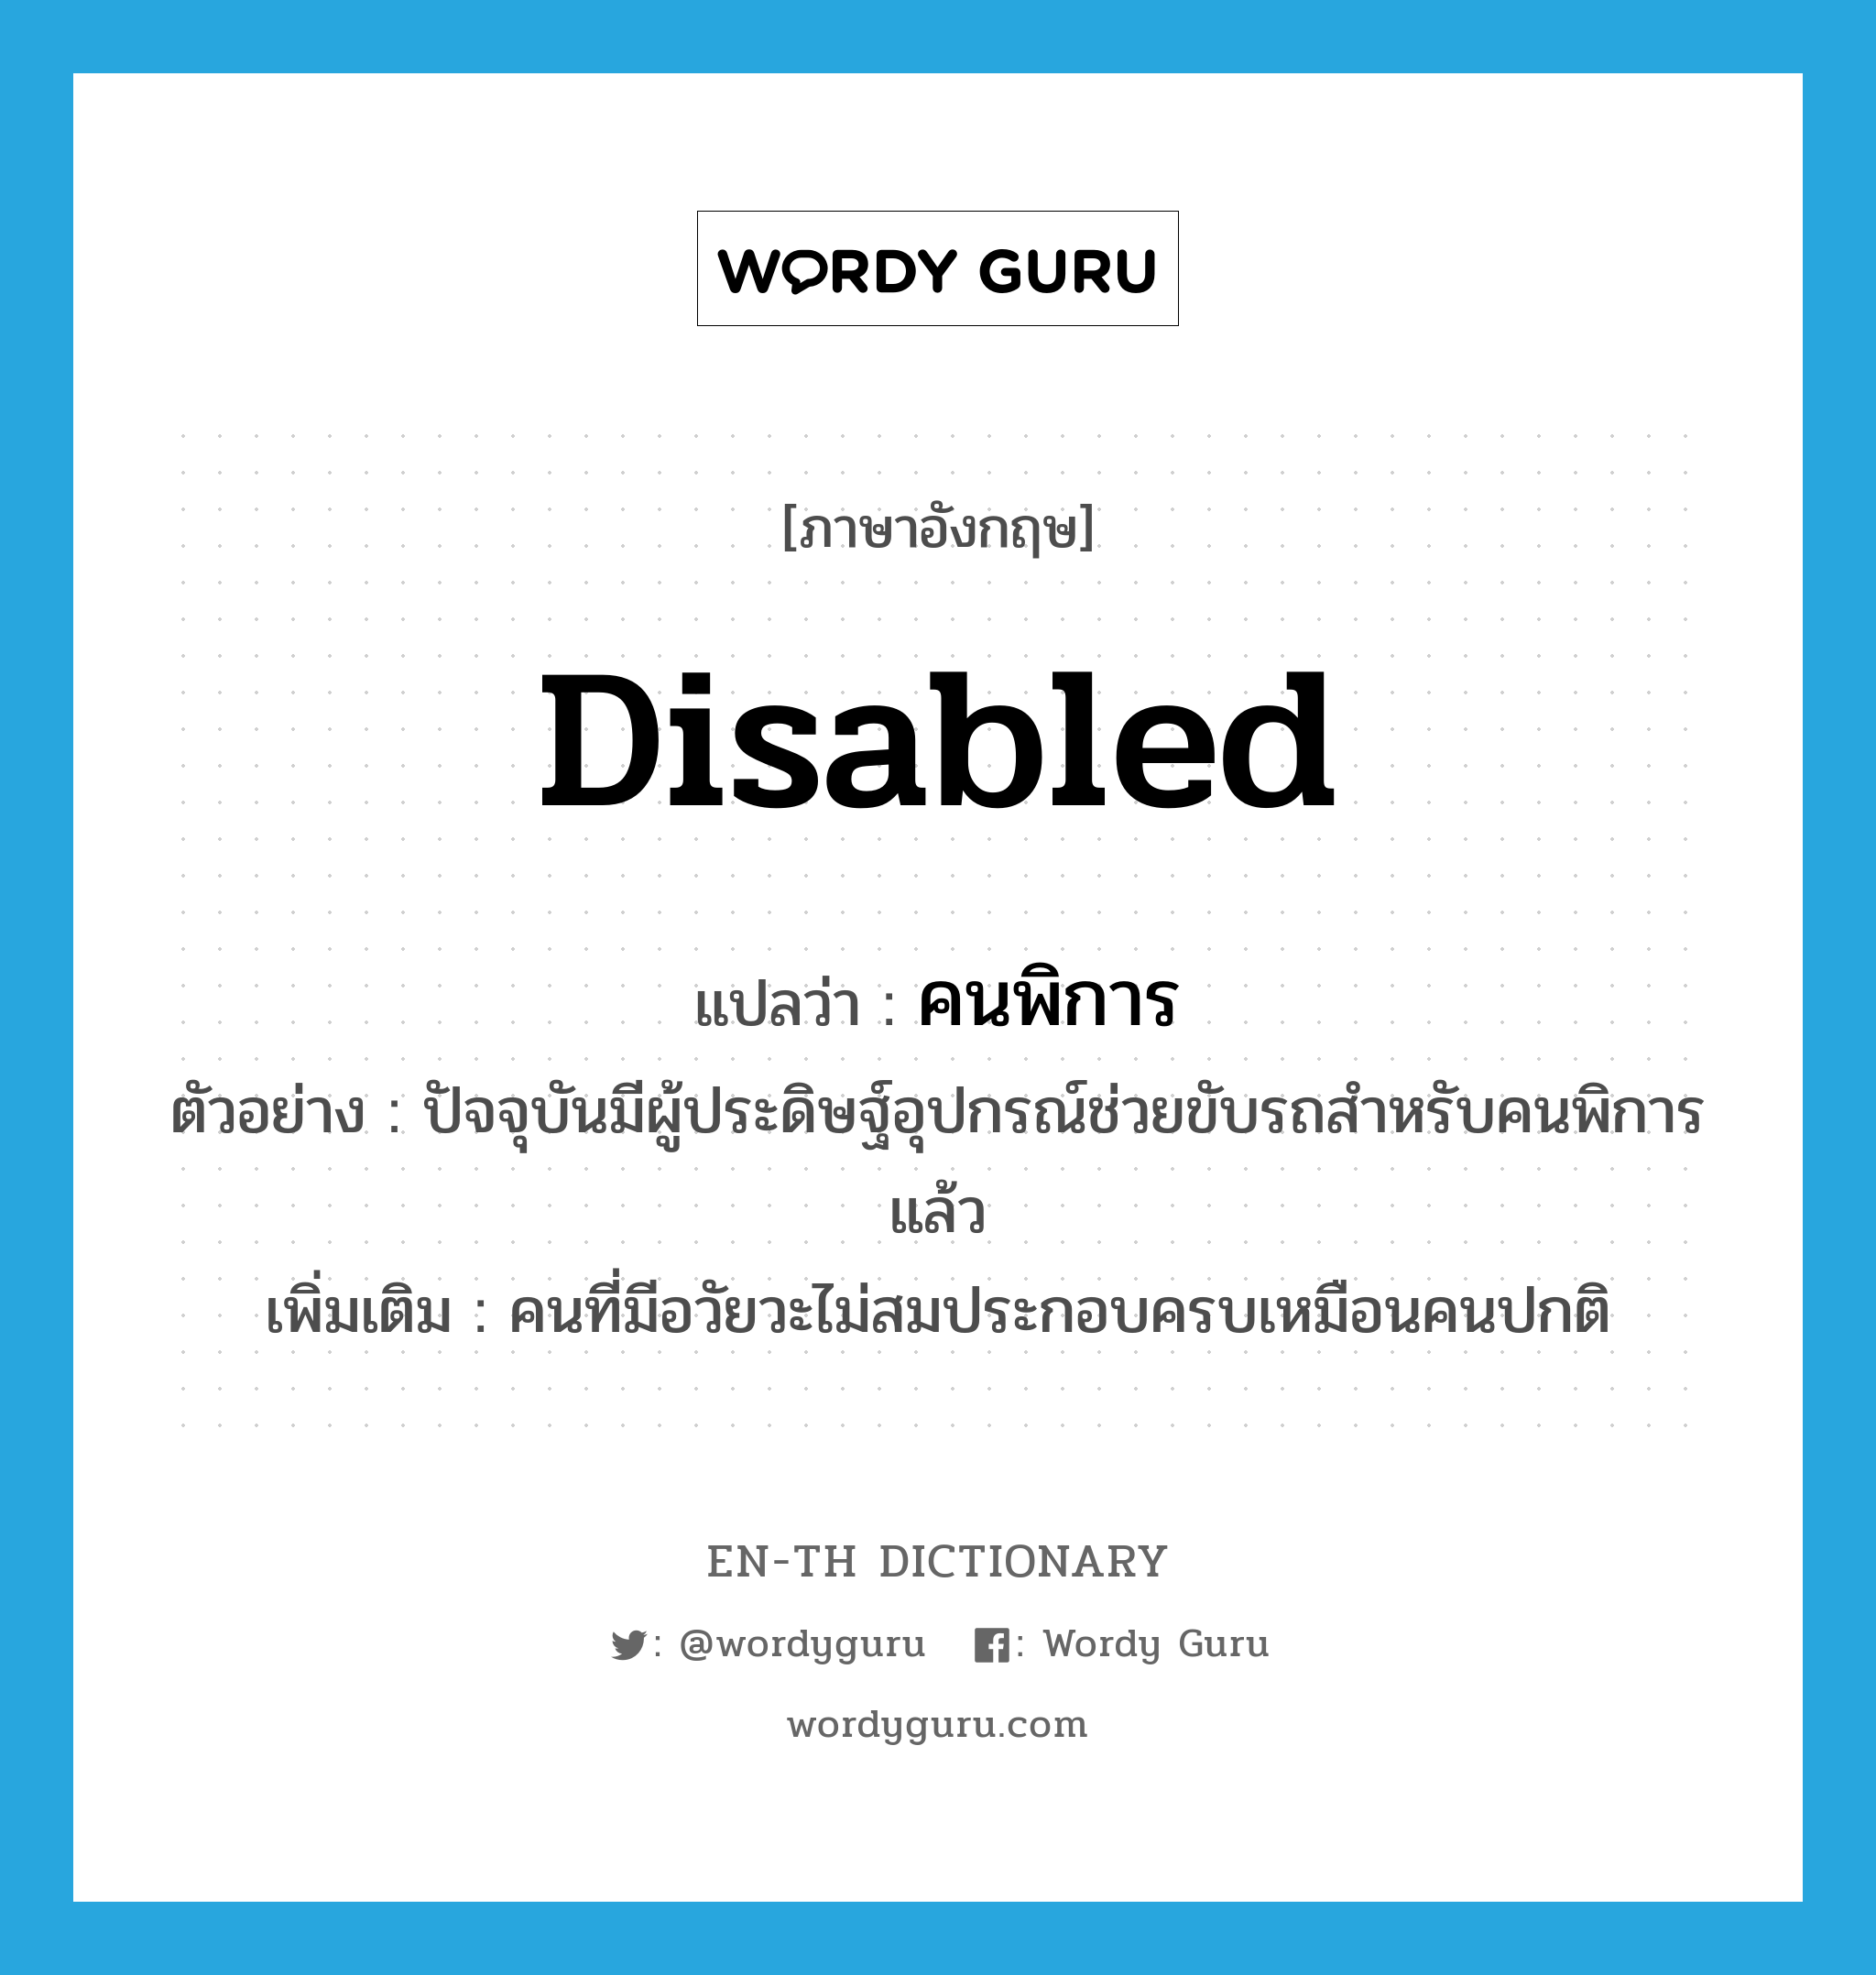 คนพิการ ภาษาอังกฤษ?, คำศัพท์ภาษาอังกฤษ คนพิการ แปลว่า disabled ประเภท N ตัวอย่าง ปัจจุบันมีผู้ประดิษฐ์อุปกรณ์ช่วยขับรถสำหรับคนพิการแล้ว เพิ่มเติม คนที่มีอวัยวะไม่สมประกอบครบเหมือนคนปกติ หมวด N